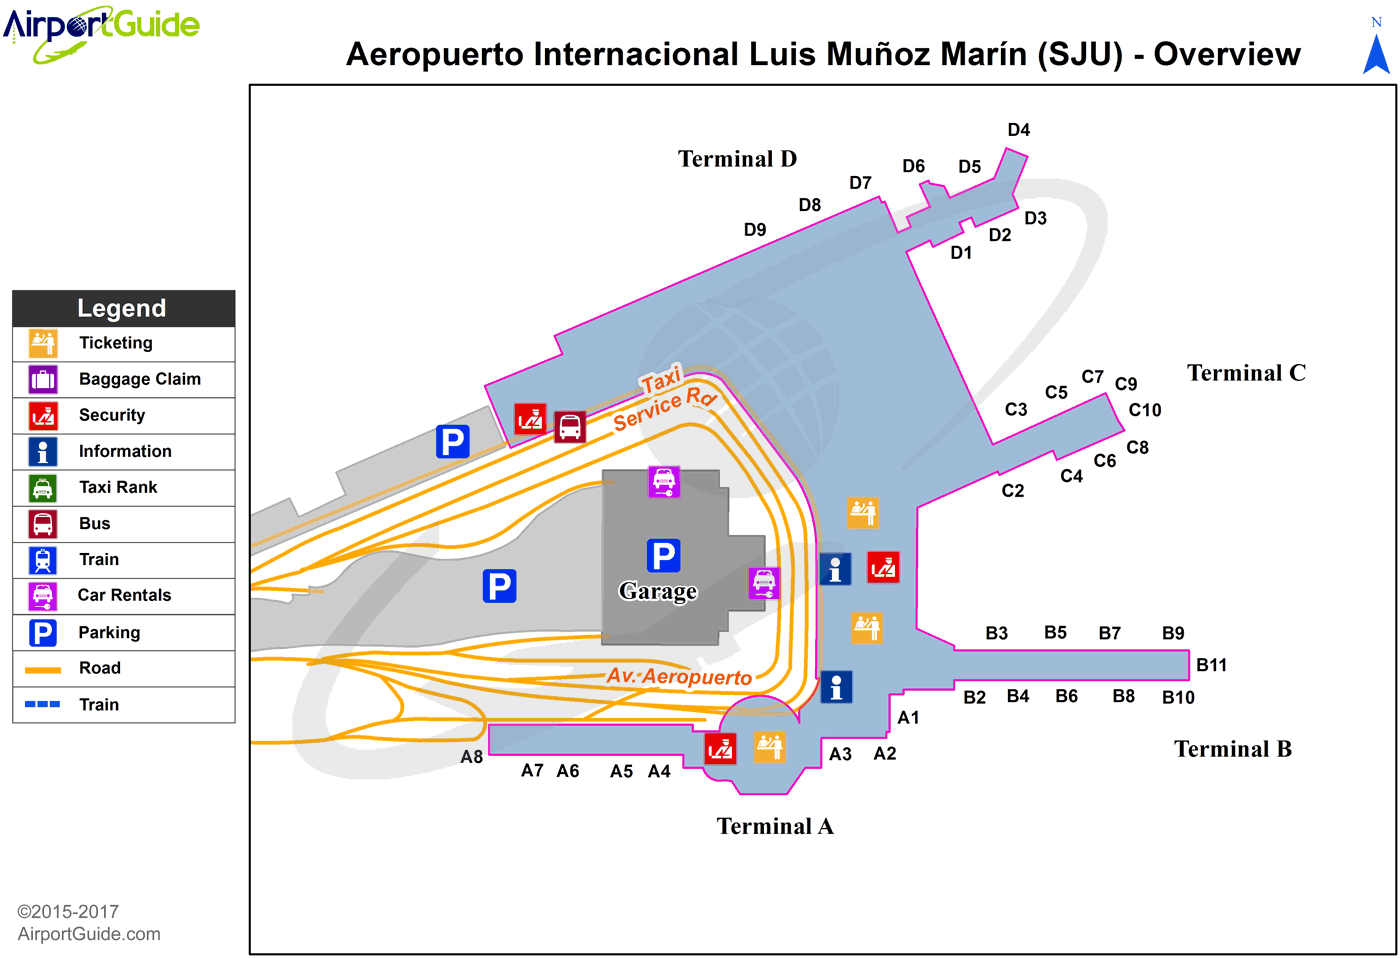 San Juan - Henry E Rohlsen (SJU) Airport Terminal Map - Overview